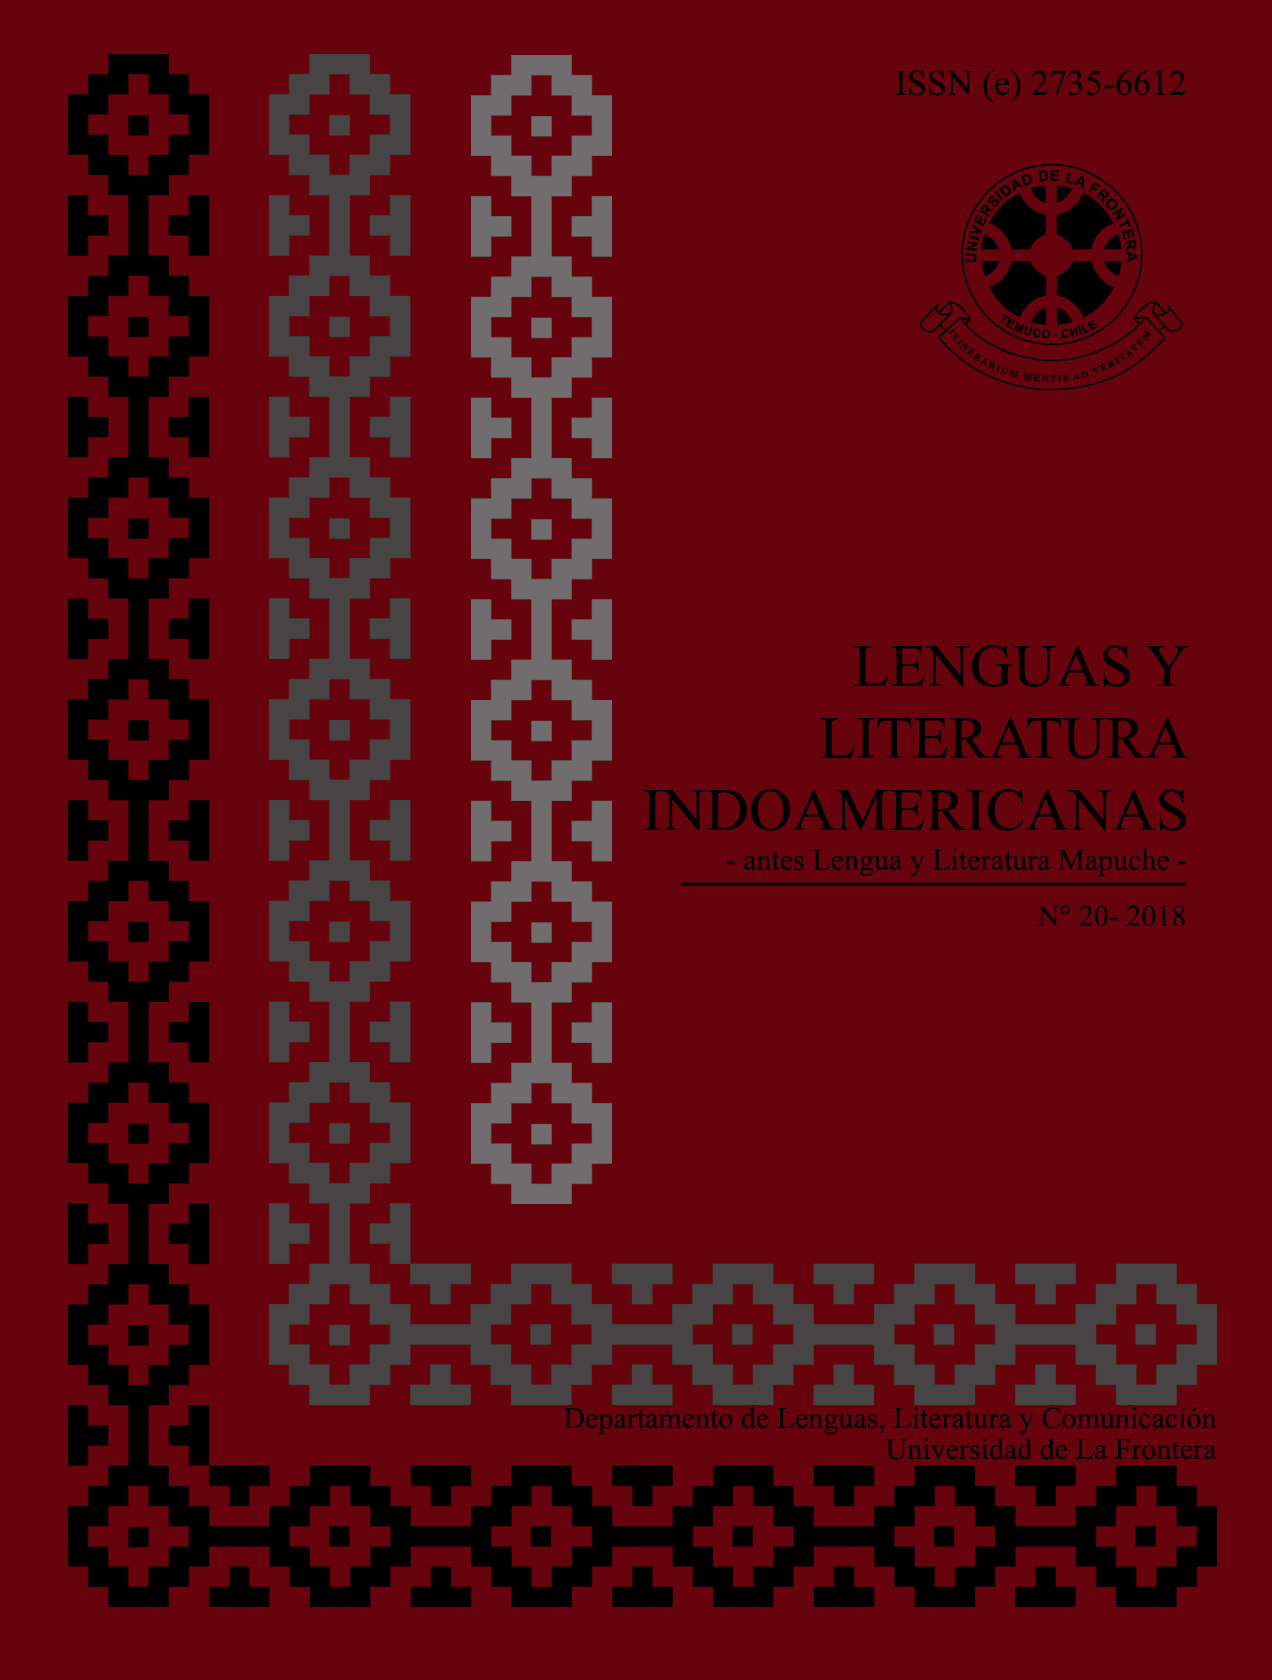 					View Vol. 20 No. 1 (2018): Revista de Lenguas y Literatura Indoamericanas (RLLI) 
				